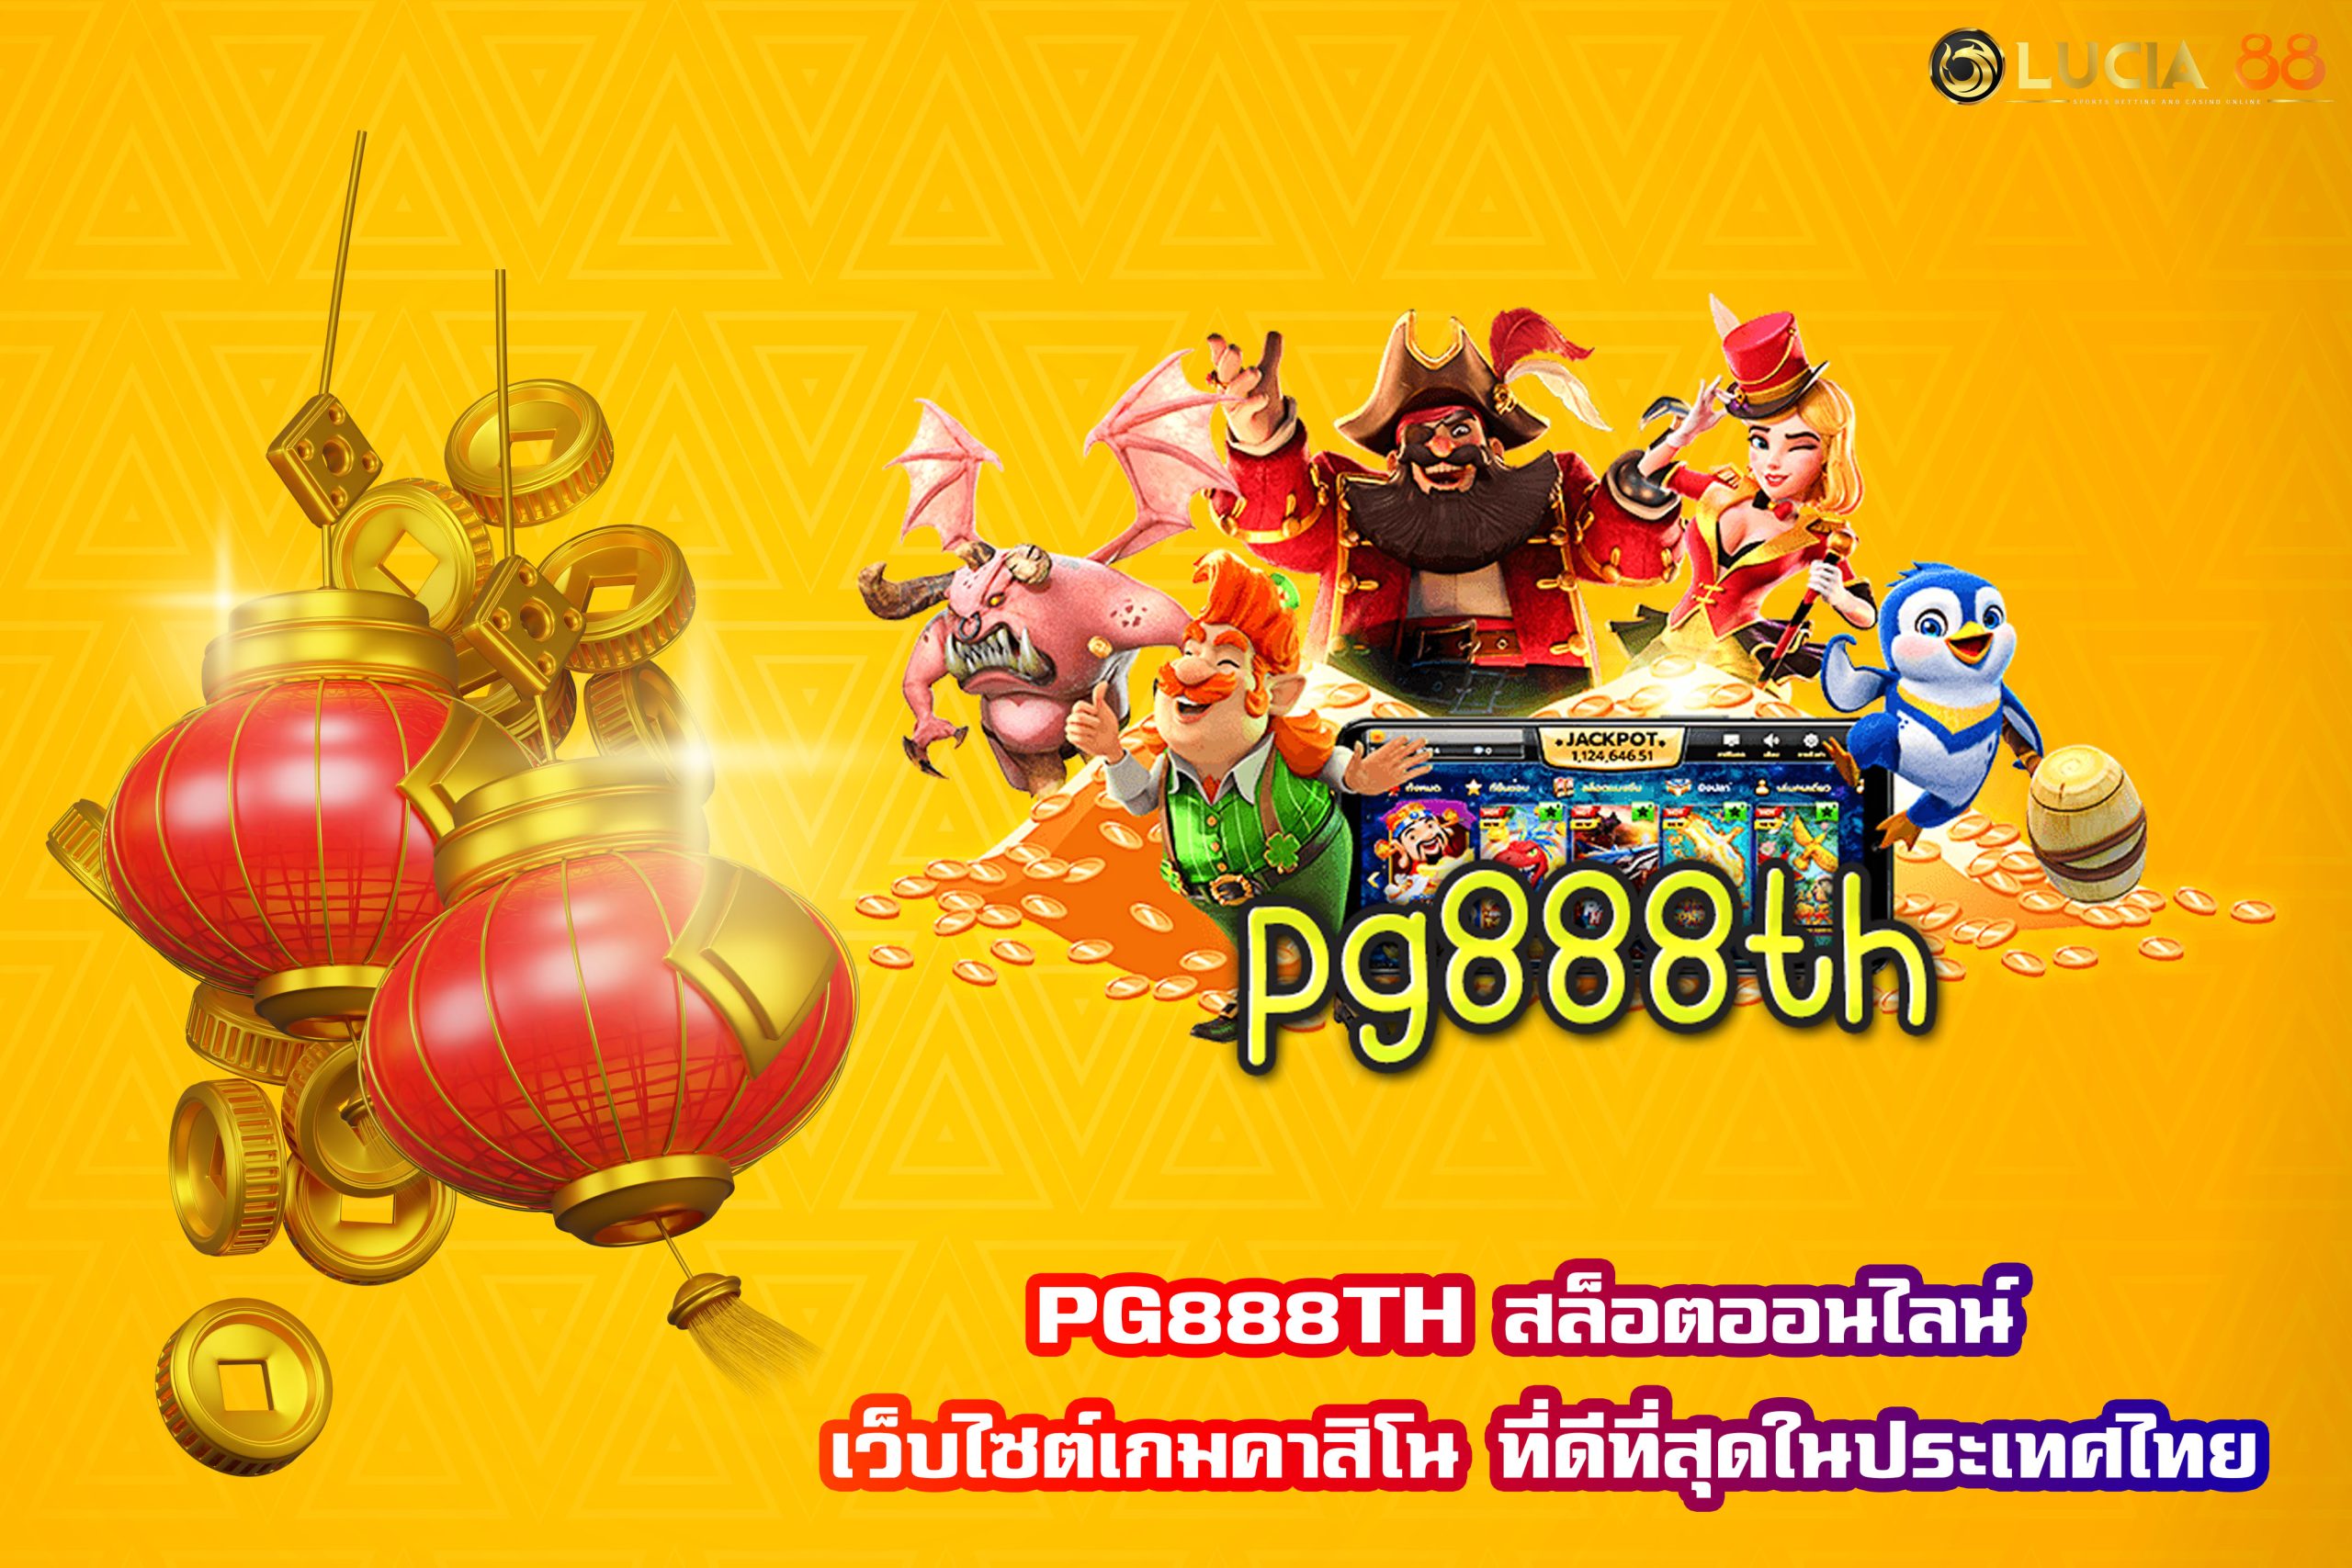 PG888TH สล็อตออนไลน์ เว็บไซต์เกมคาสิโน ที่ดีที่สุดในประเทศไทย